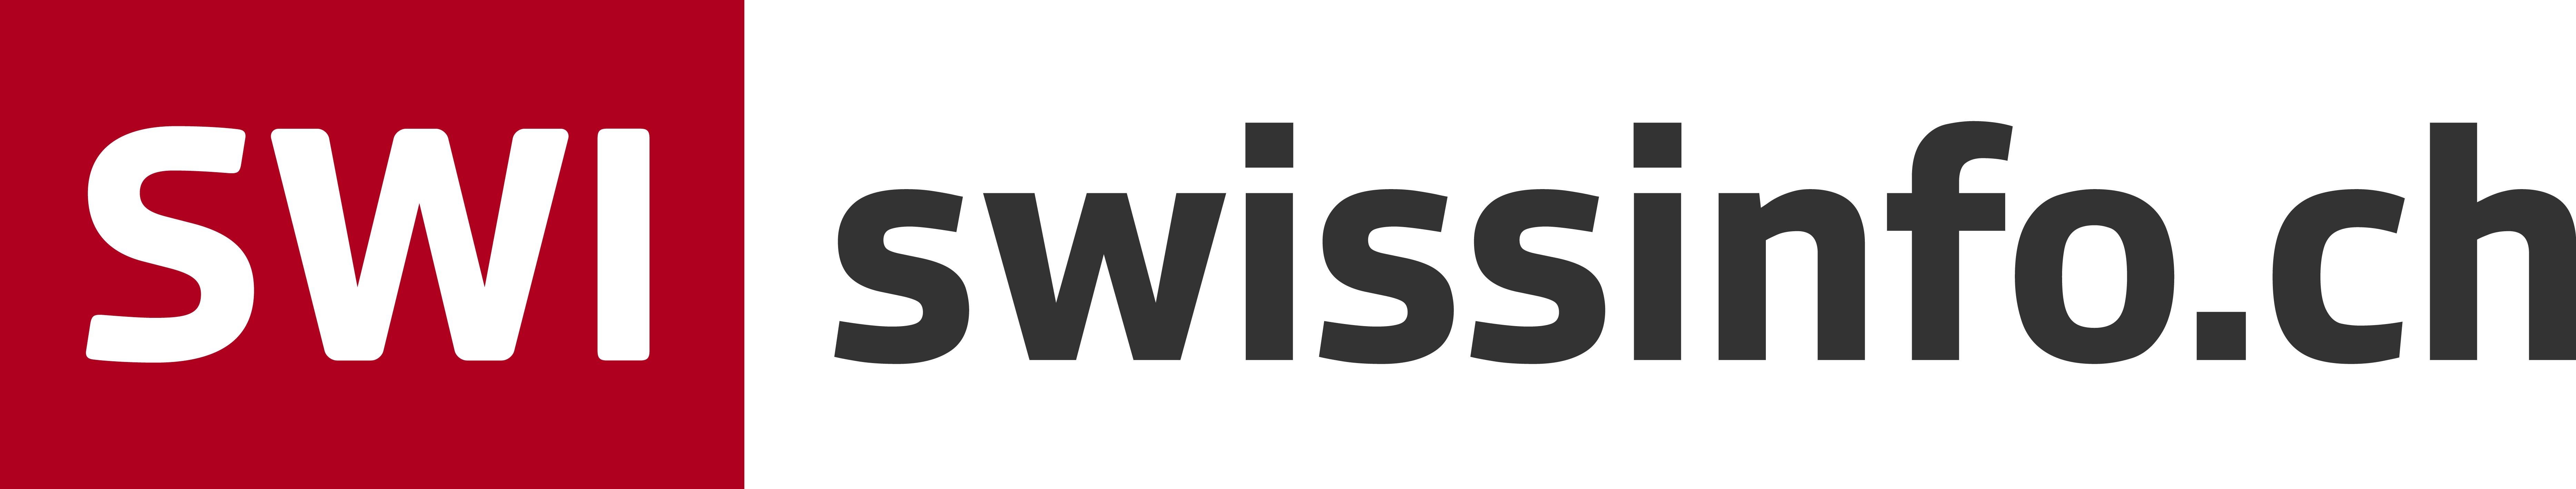 Swissinfo_logo_06.10.2020